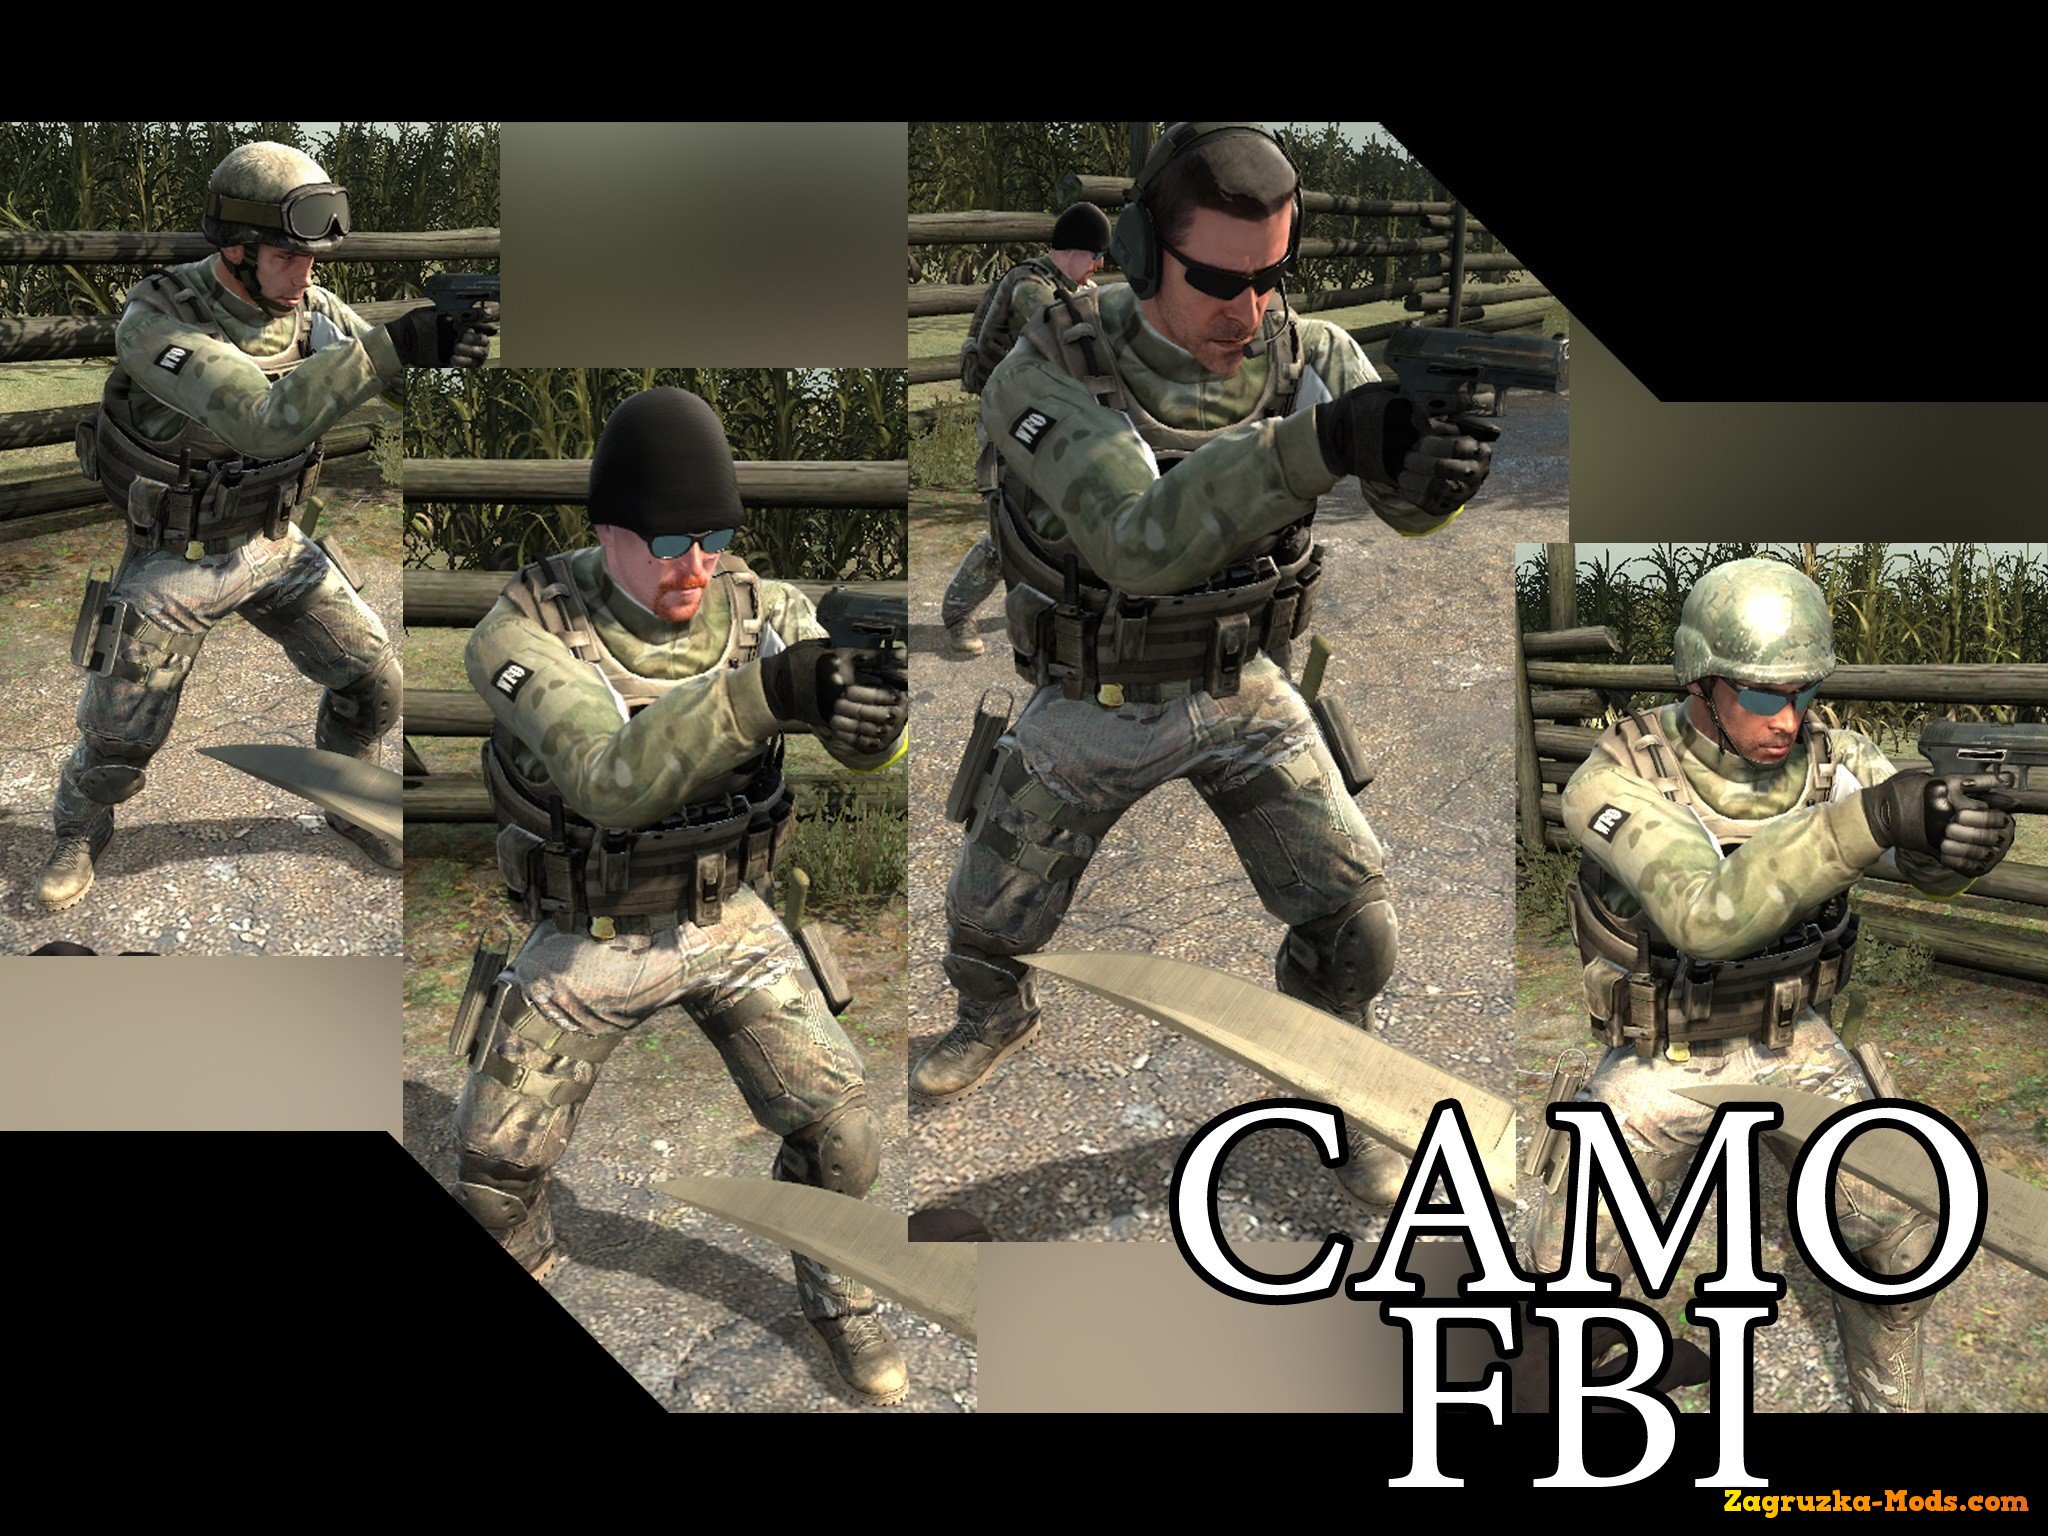 Camo Fbi Retexture For Cs Go Simulator Mods Ets 2 Ats Fs17